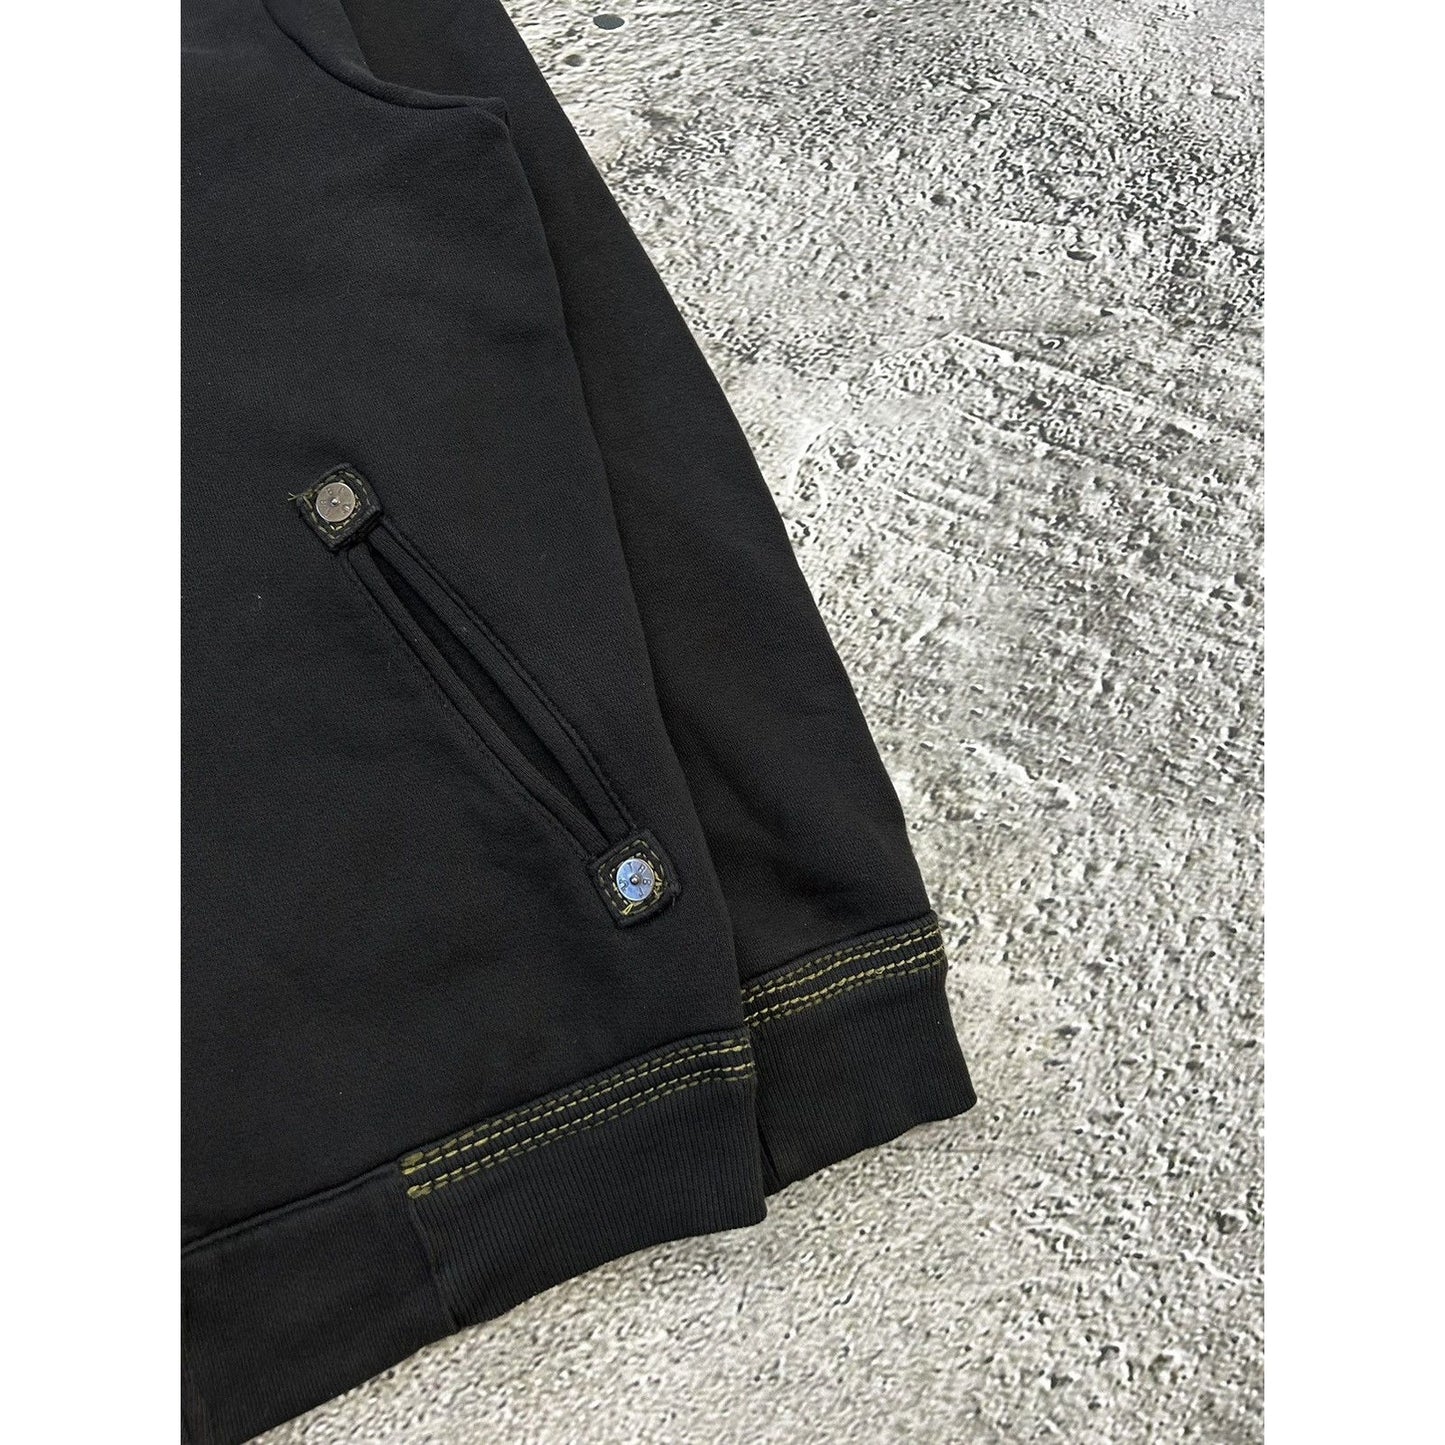 True Religion vintage black zip hoodie Y2K thick stitching